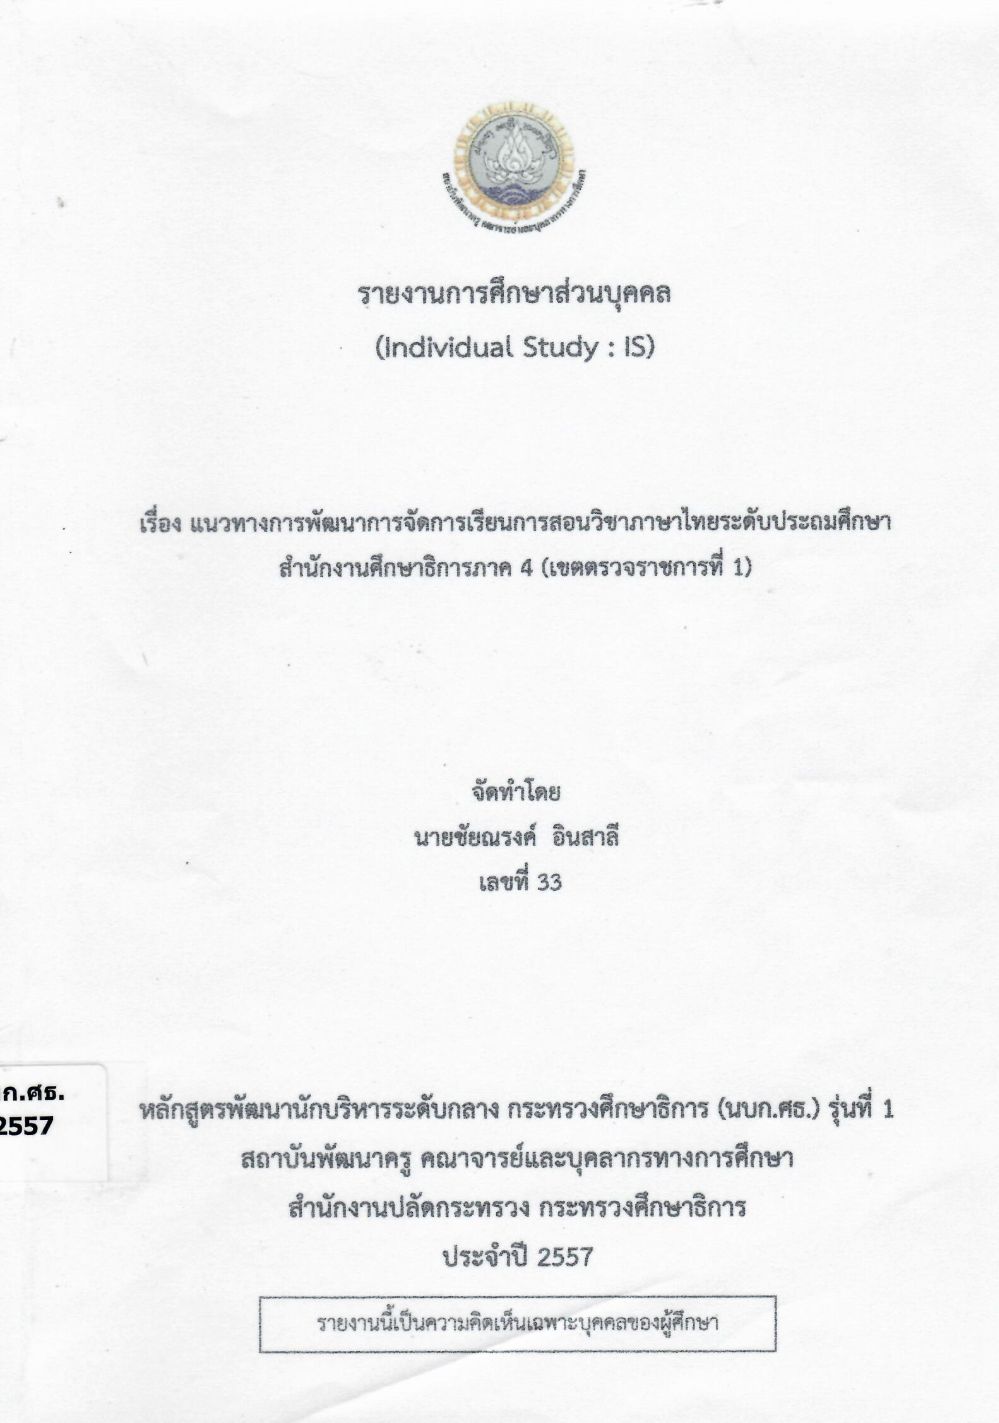 แนวทางการพัฒนาการจัดการเรียนการสอนวิชาภาษาไทยระดับประถมศึกษา สำนักงานศึกษาธิการภาค 4 (เขตตรวจราชการที่ 1) : รายงานการศึกษาส่วนบุคคล (Individual Study)/ ชัยณรงค์ อินสาลี